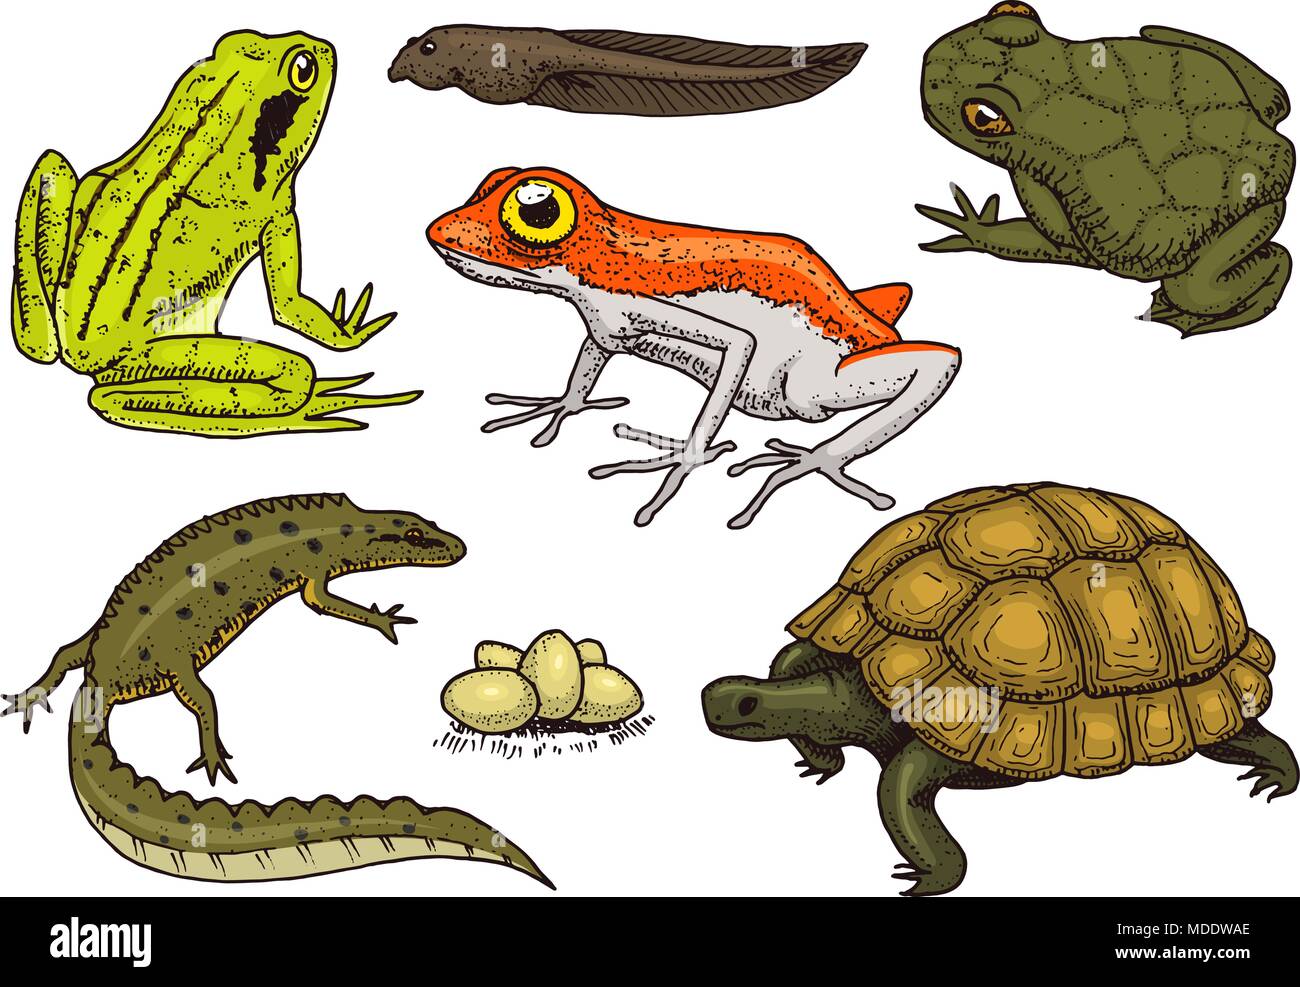 Los reptiles y anfibios. Mascotas y animales tropicales. La flora y la  fauna silvestres y ranas, lagartijas y tortugas, camaleones y anuros  grabado dibujado a mano en old vintage sketch. Ilustración vectorial.